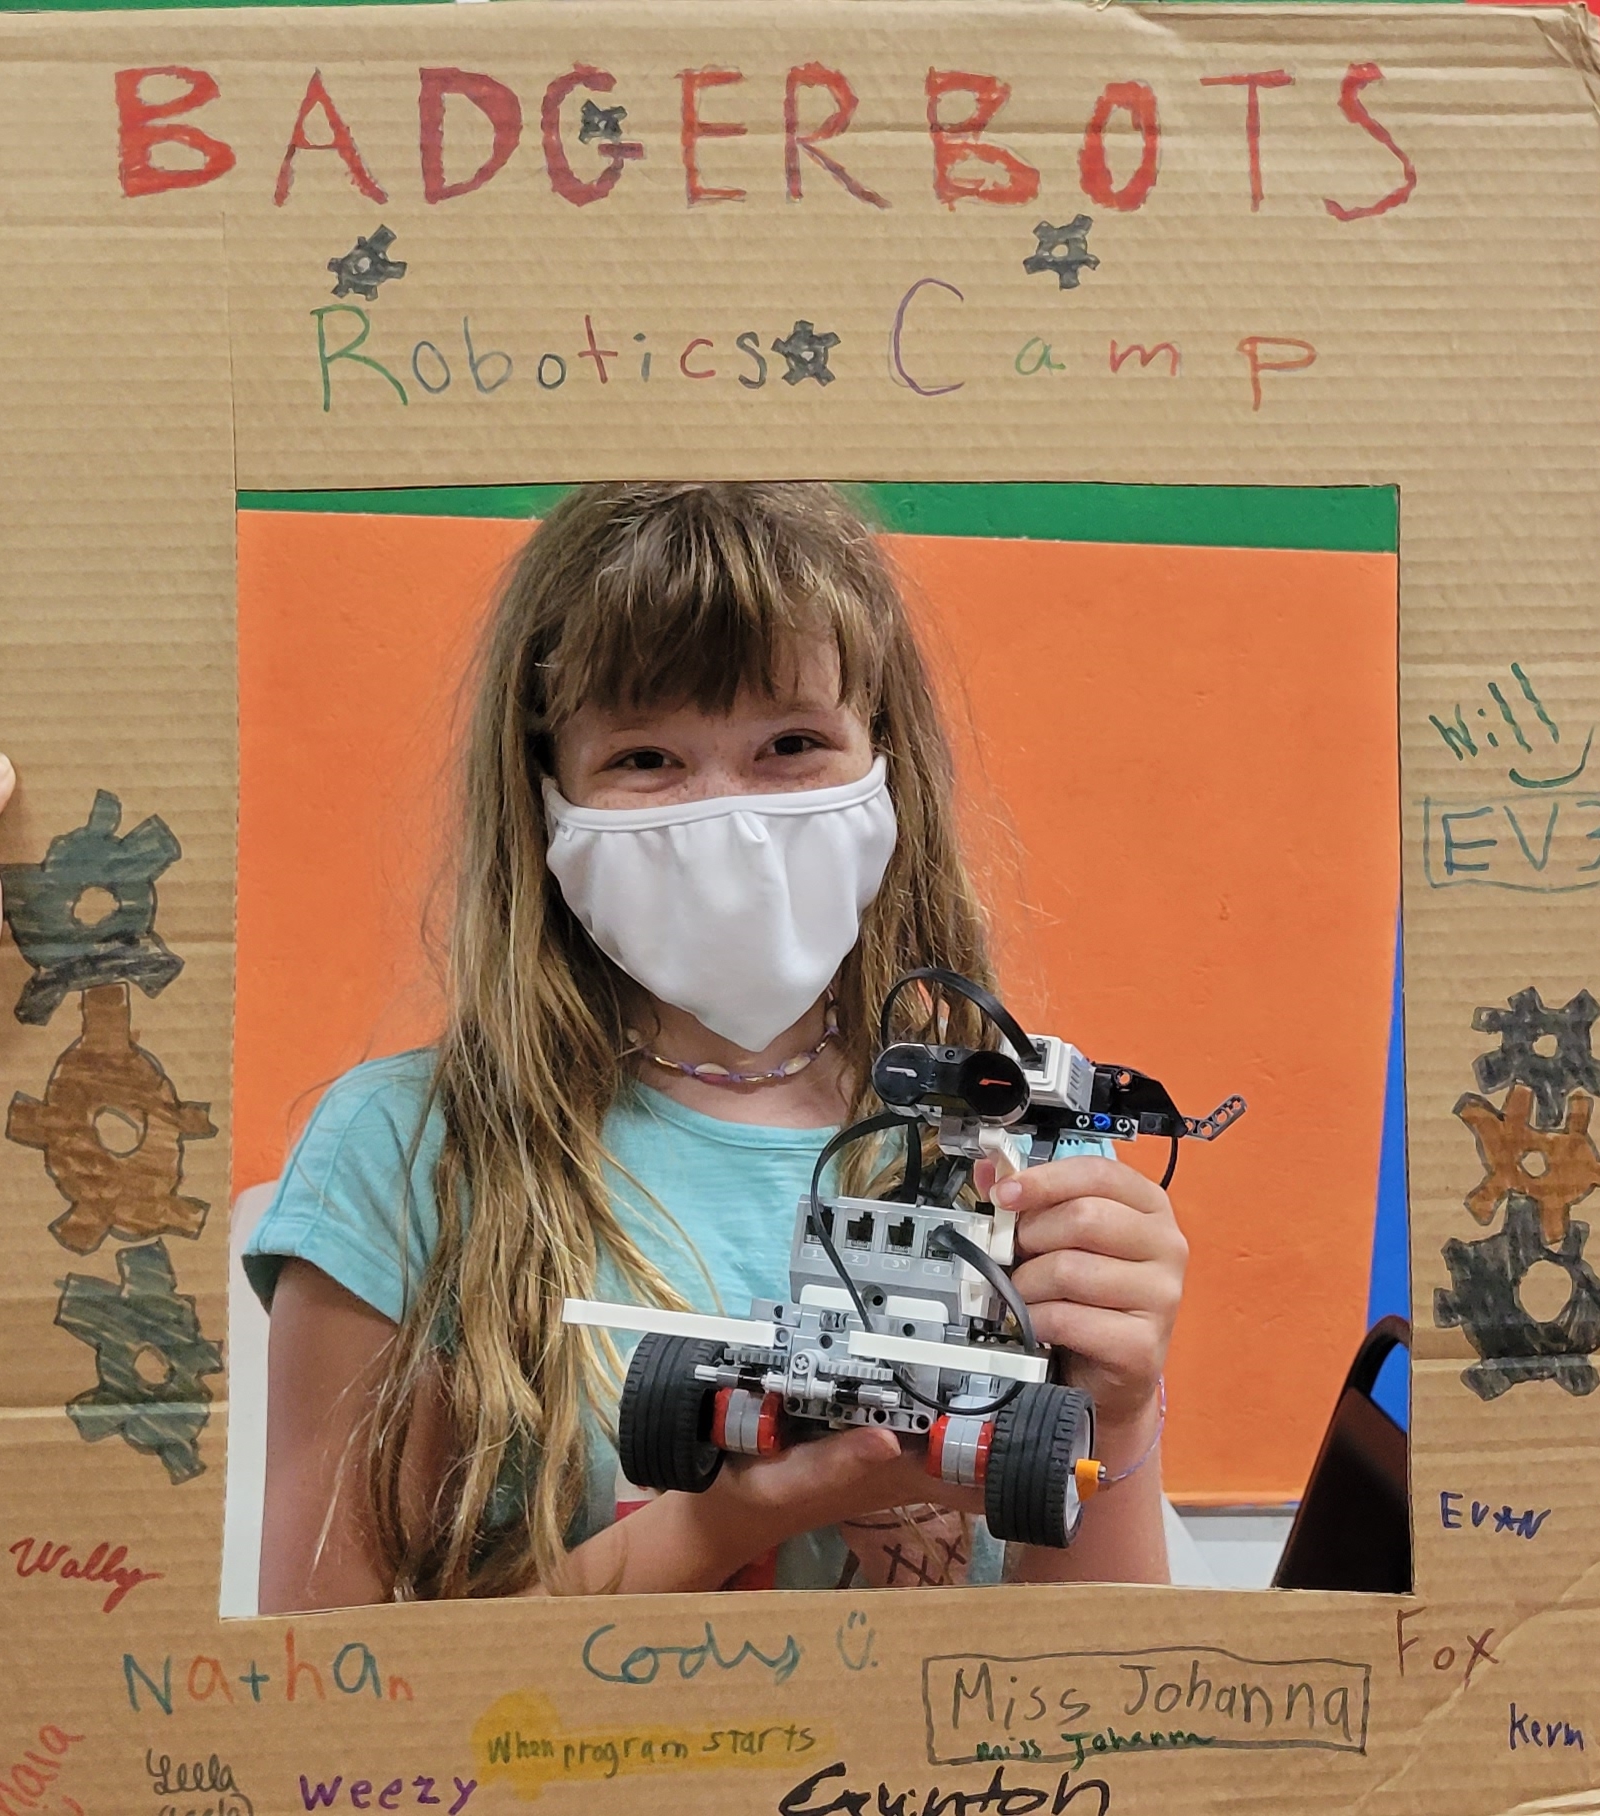 BadgerBots STEM Summer Camp